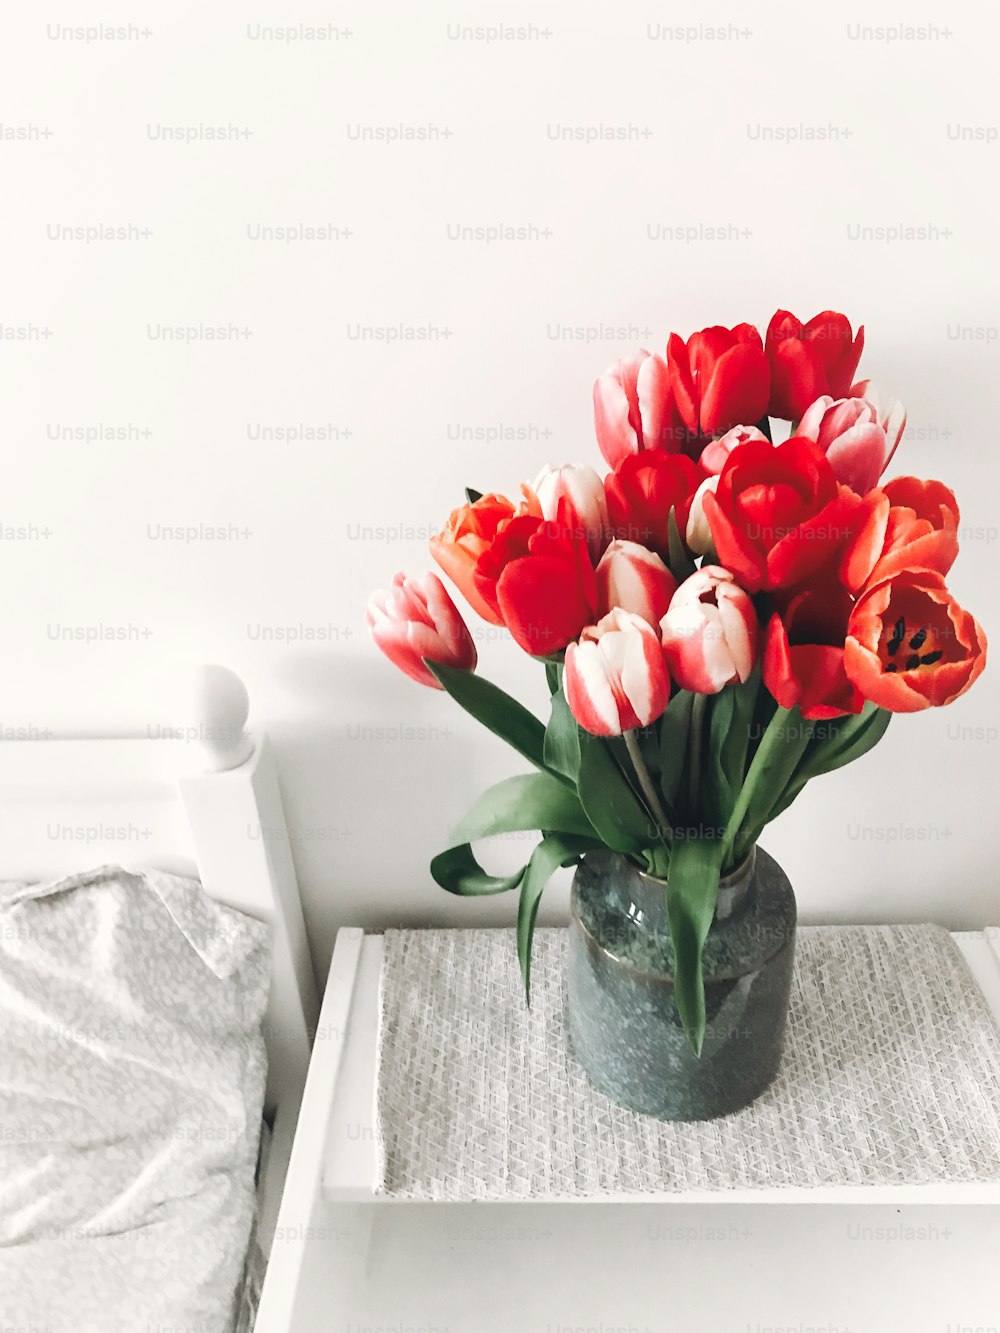 Hermosos tulipanes rojos y rosas en jarrón en mesita de noche de madera blanca cerca de una elegante cama blanca, espacio de copia. Hola concepto de primavera. Feliz día de la madre